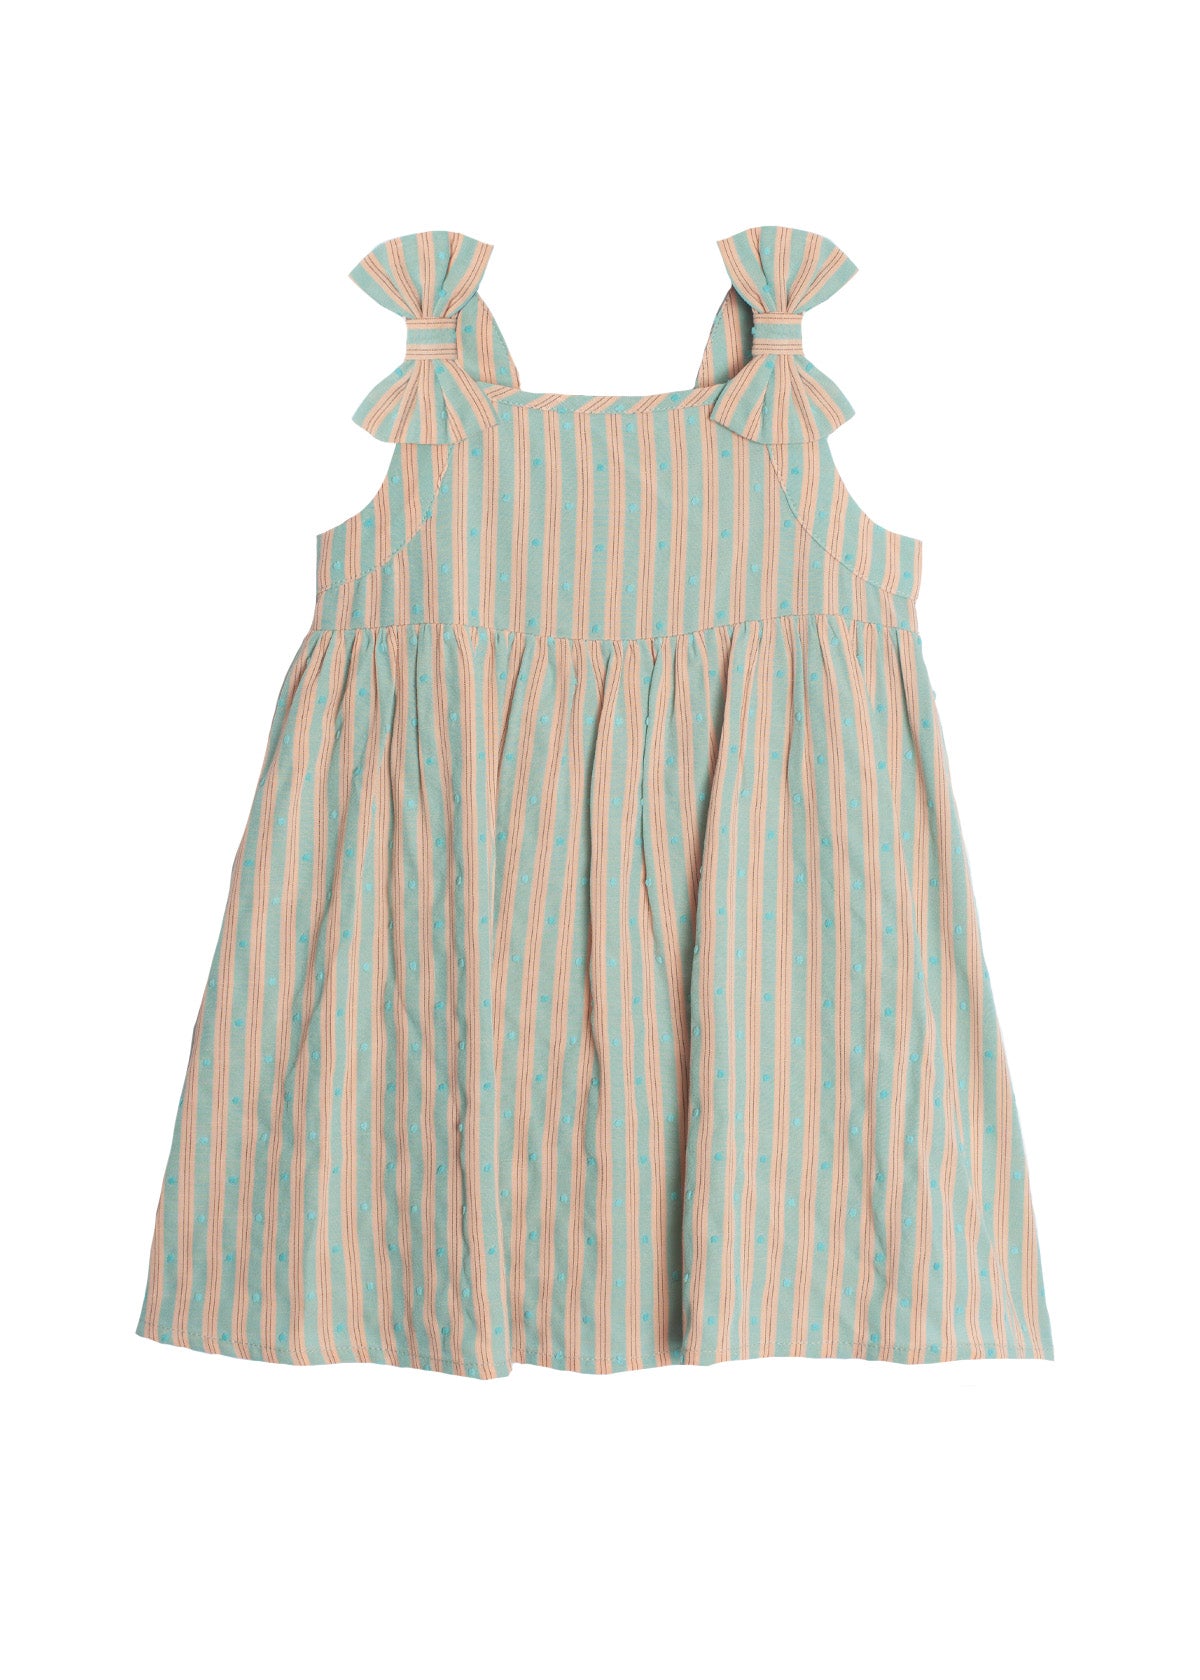 Cotton Candy Dream Dress  - Doodlebug's Children's Boutique